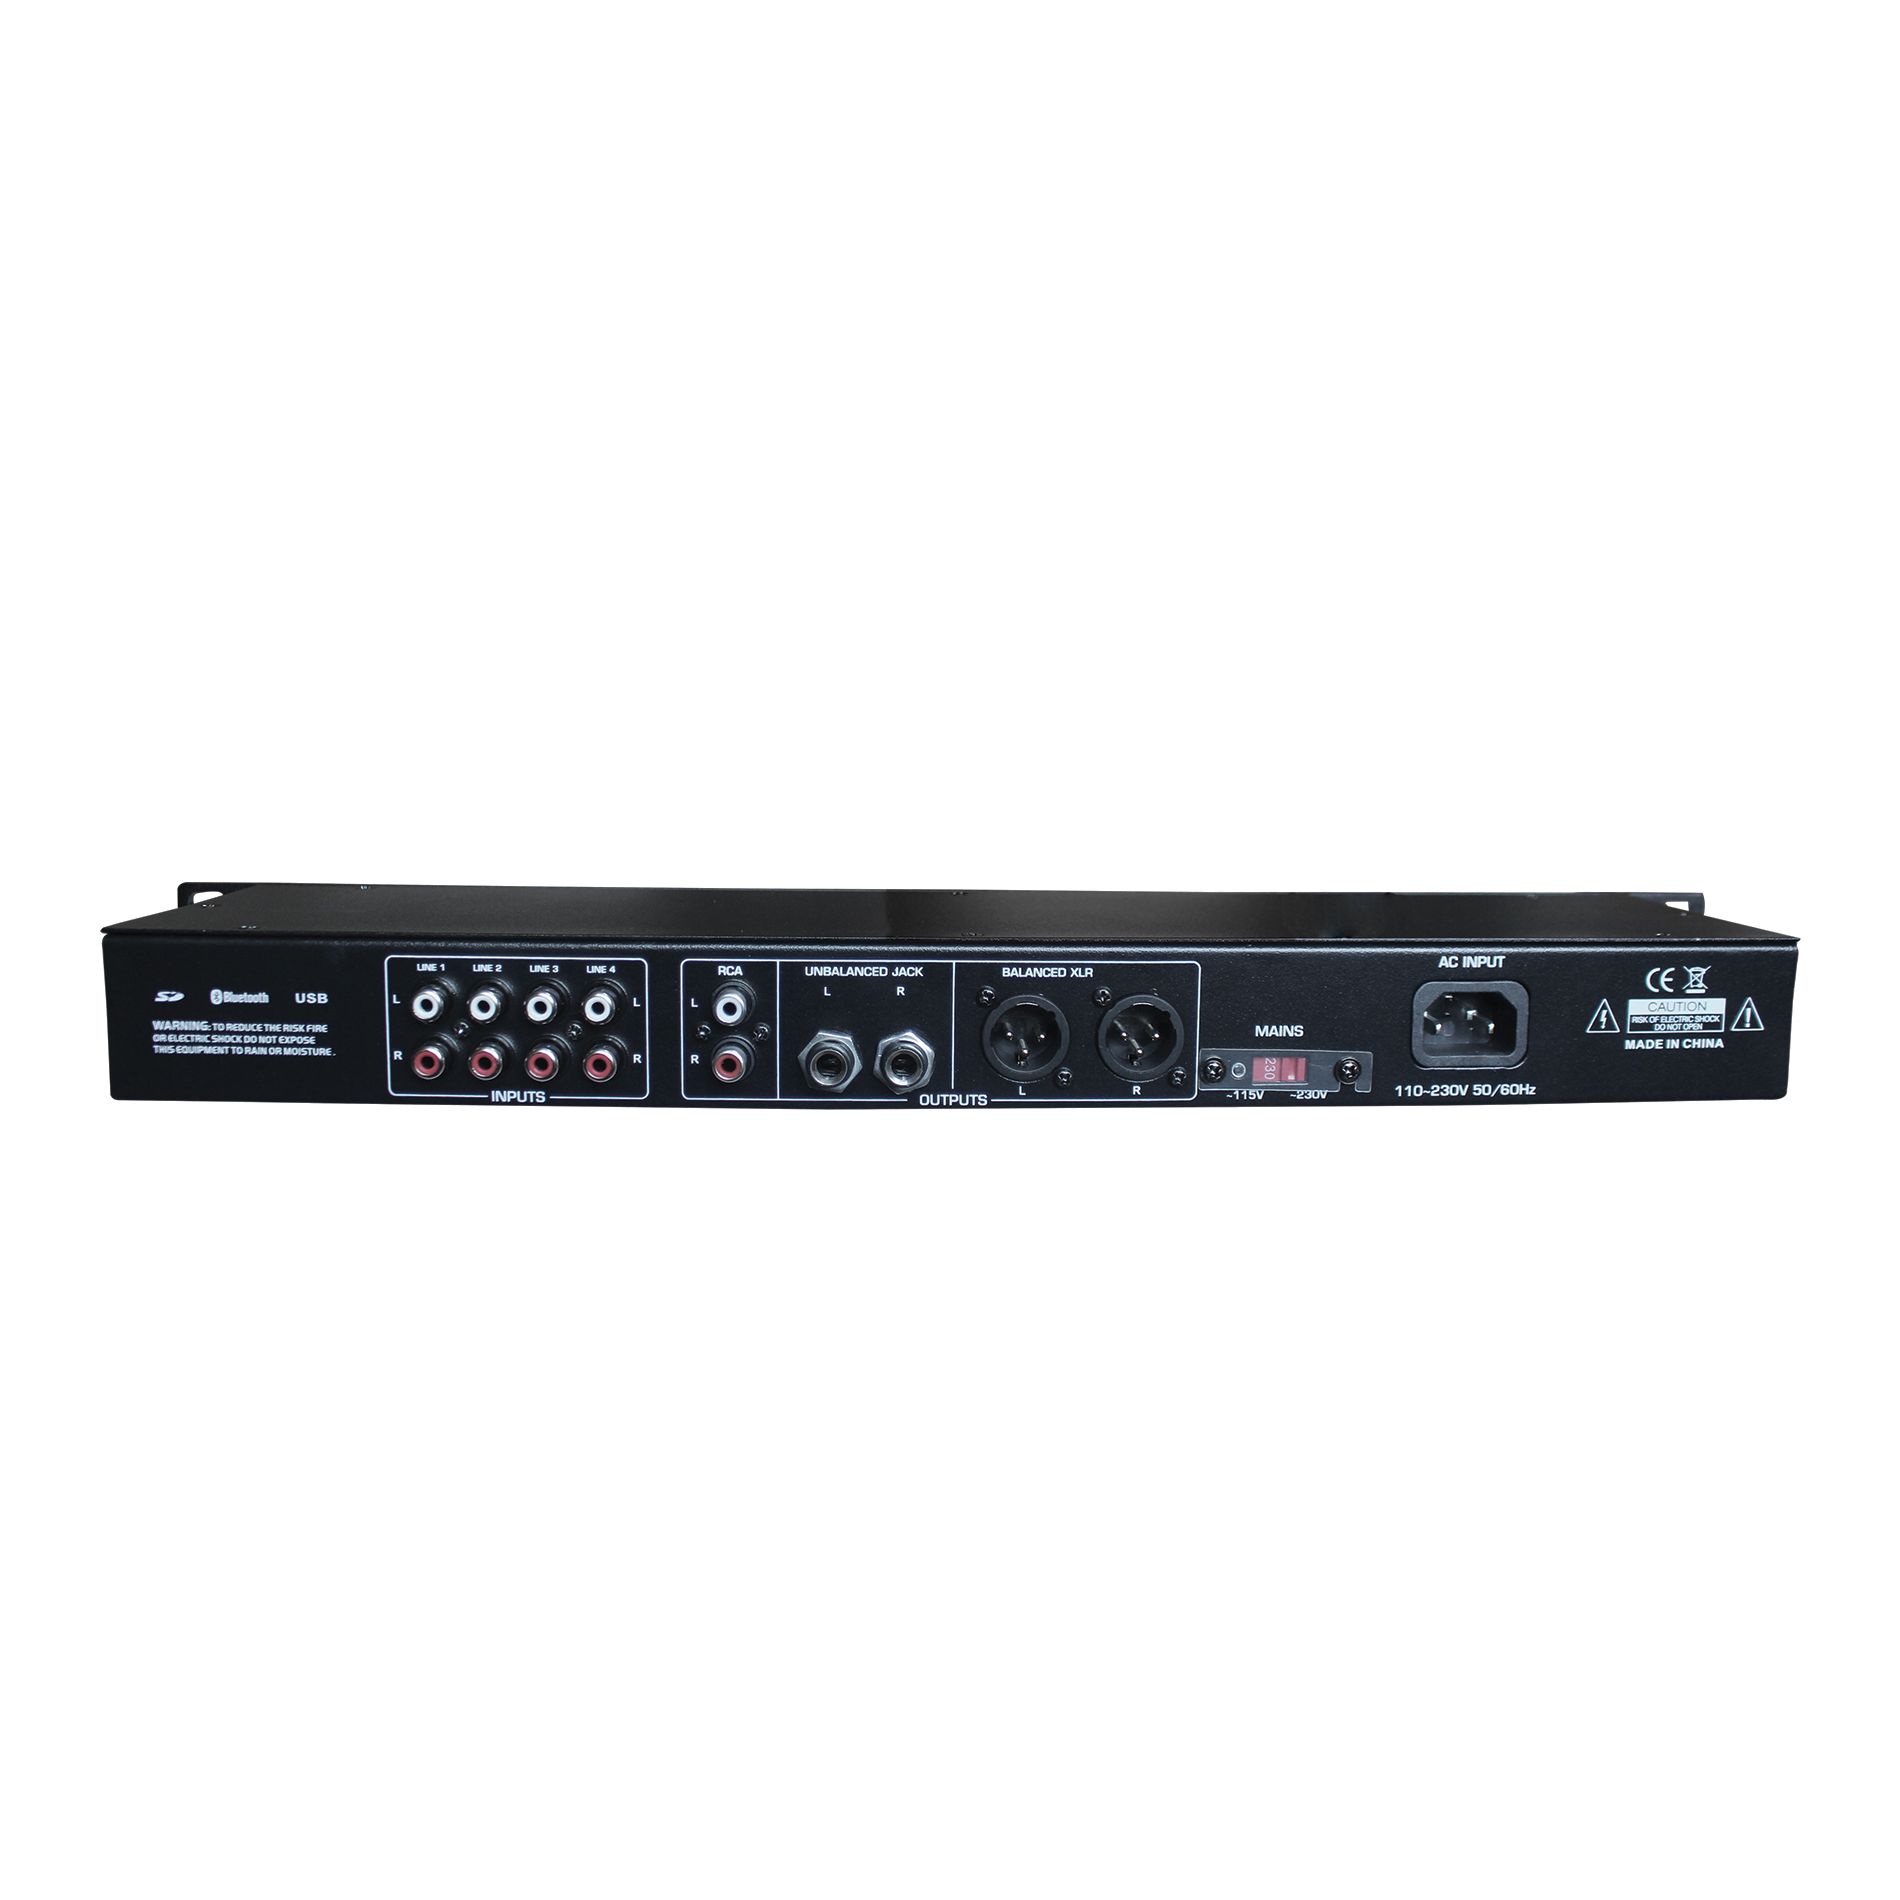 Definitive Audio Media Player One - Grabador en rack - Variation 2